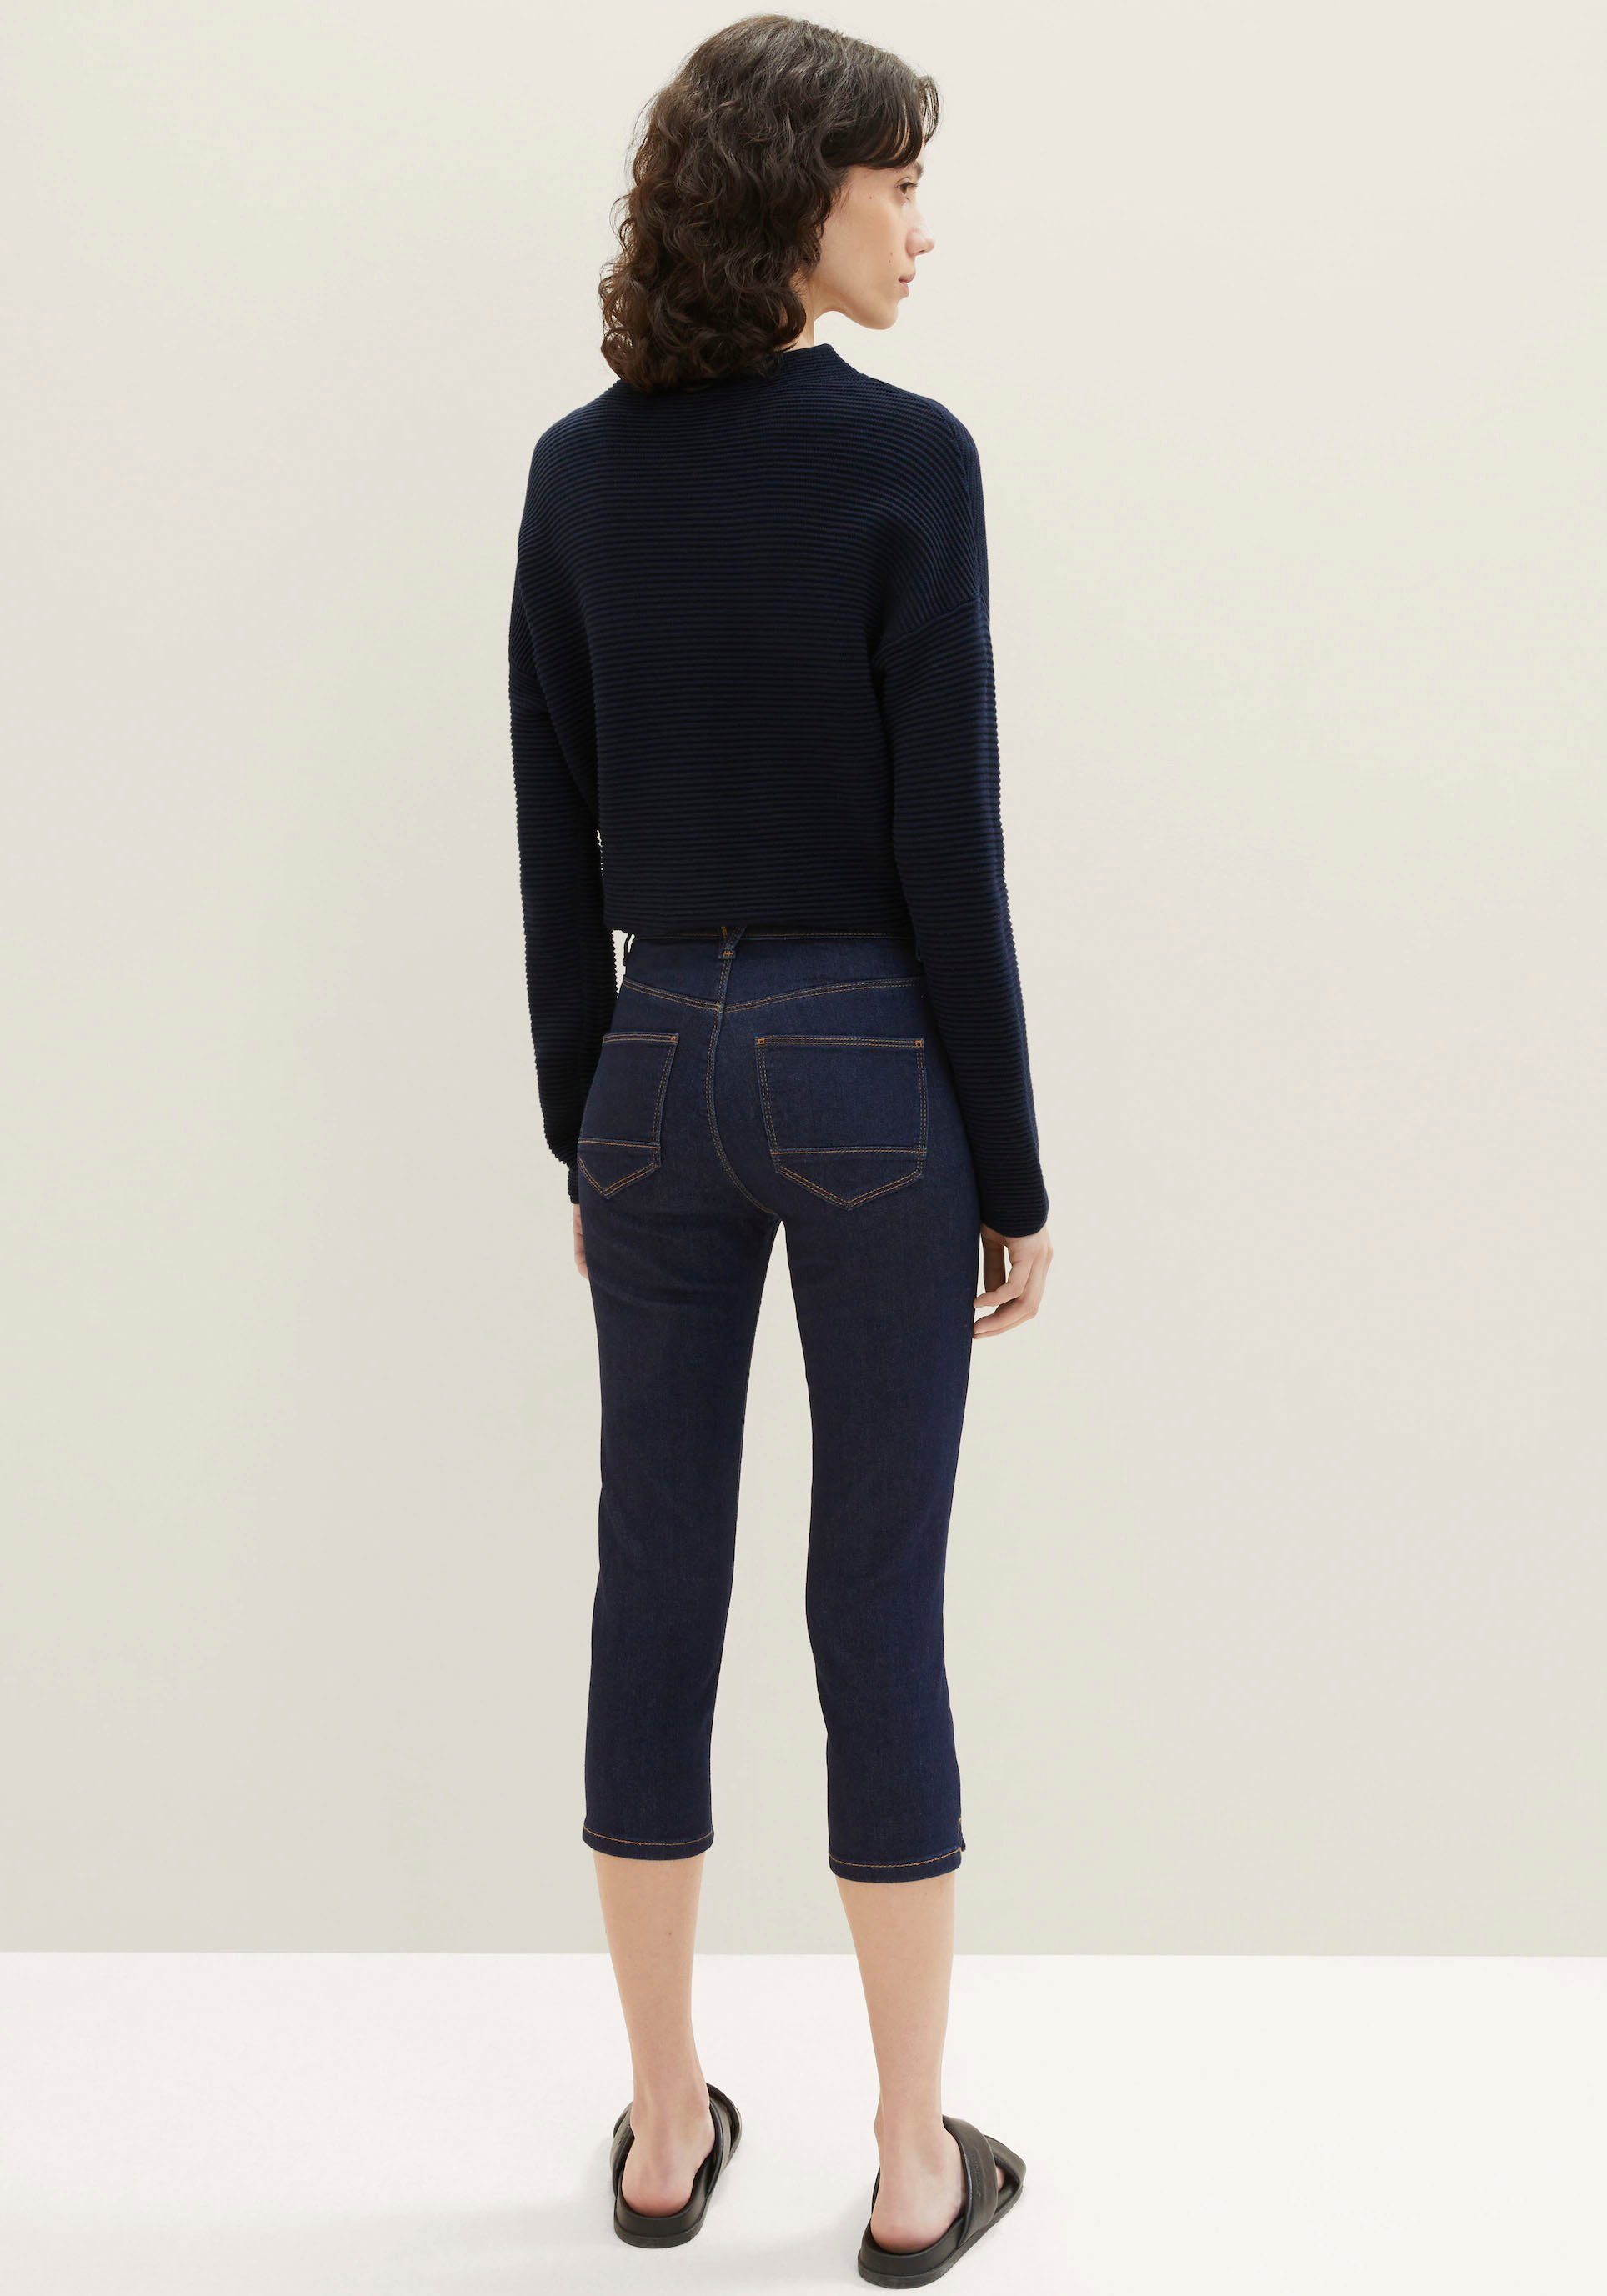 TOM TAILOR 5-Pocket-Jeans, Ideal in der Freizeit für warme Tage | Straight-Fit Jeans